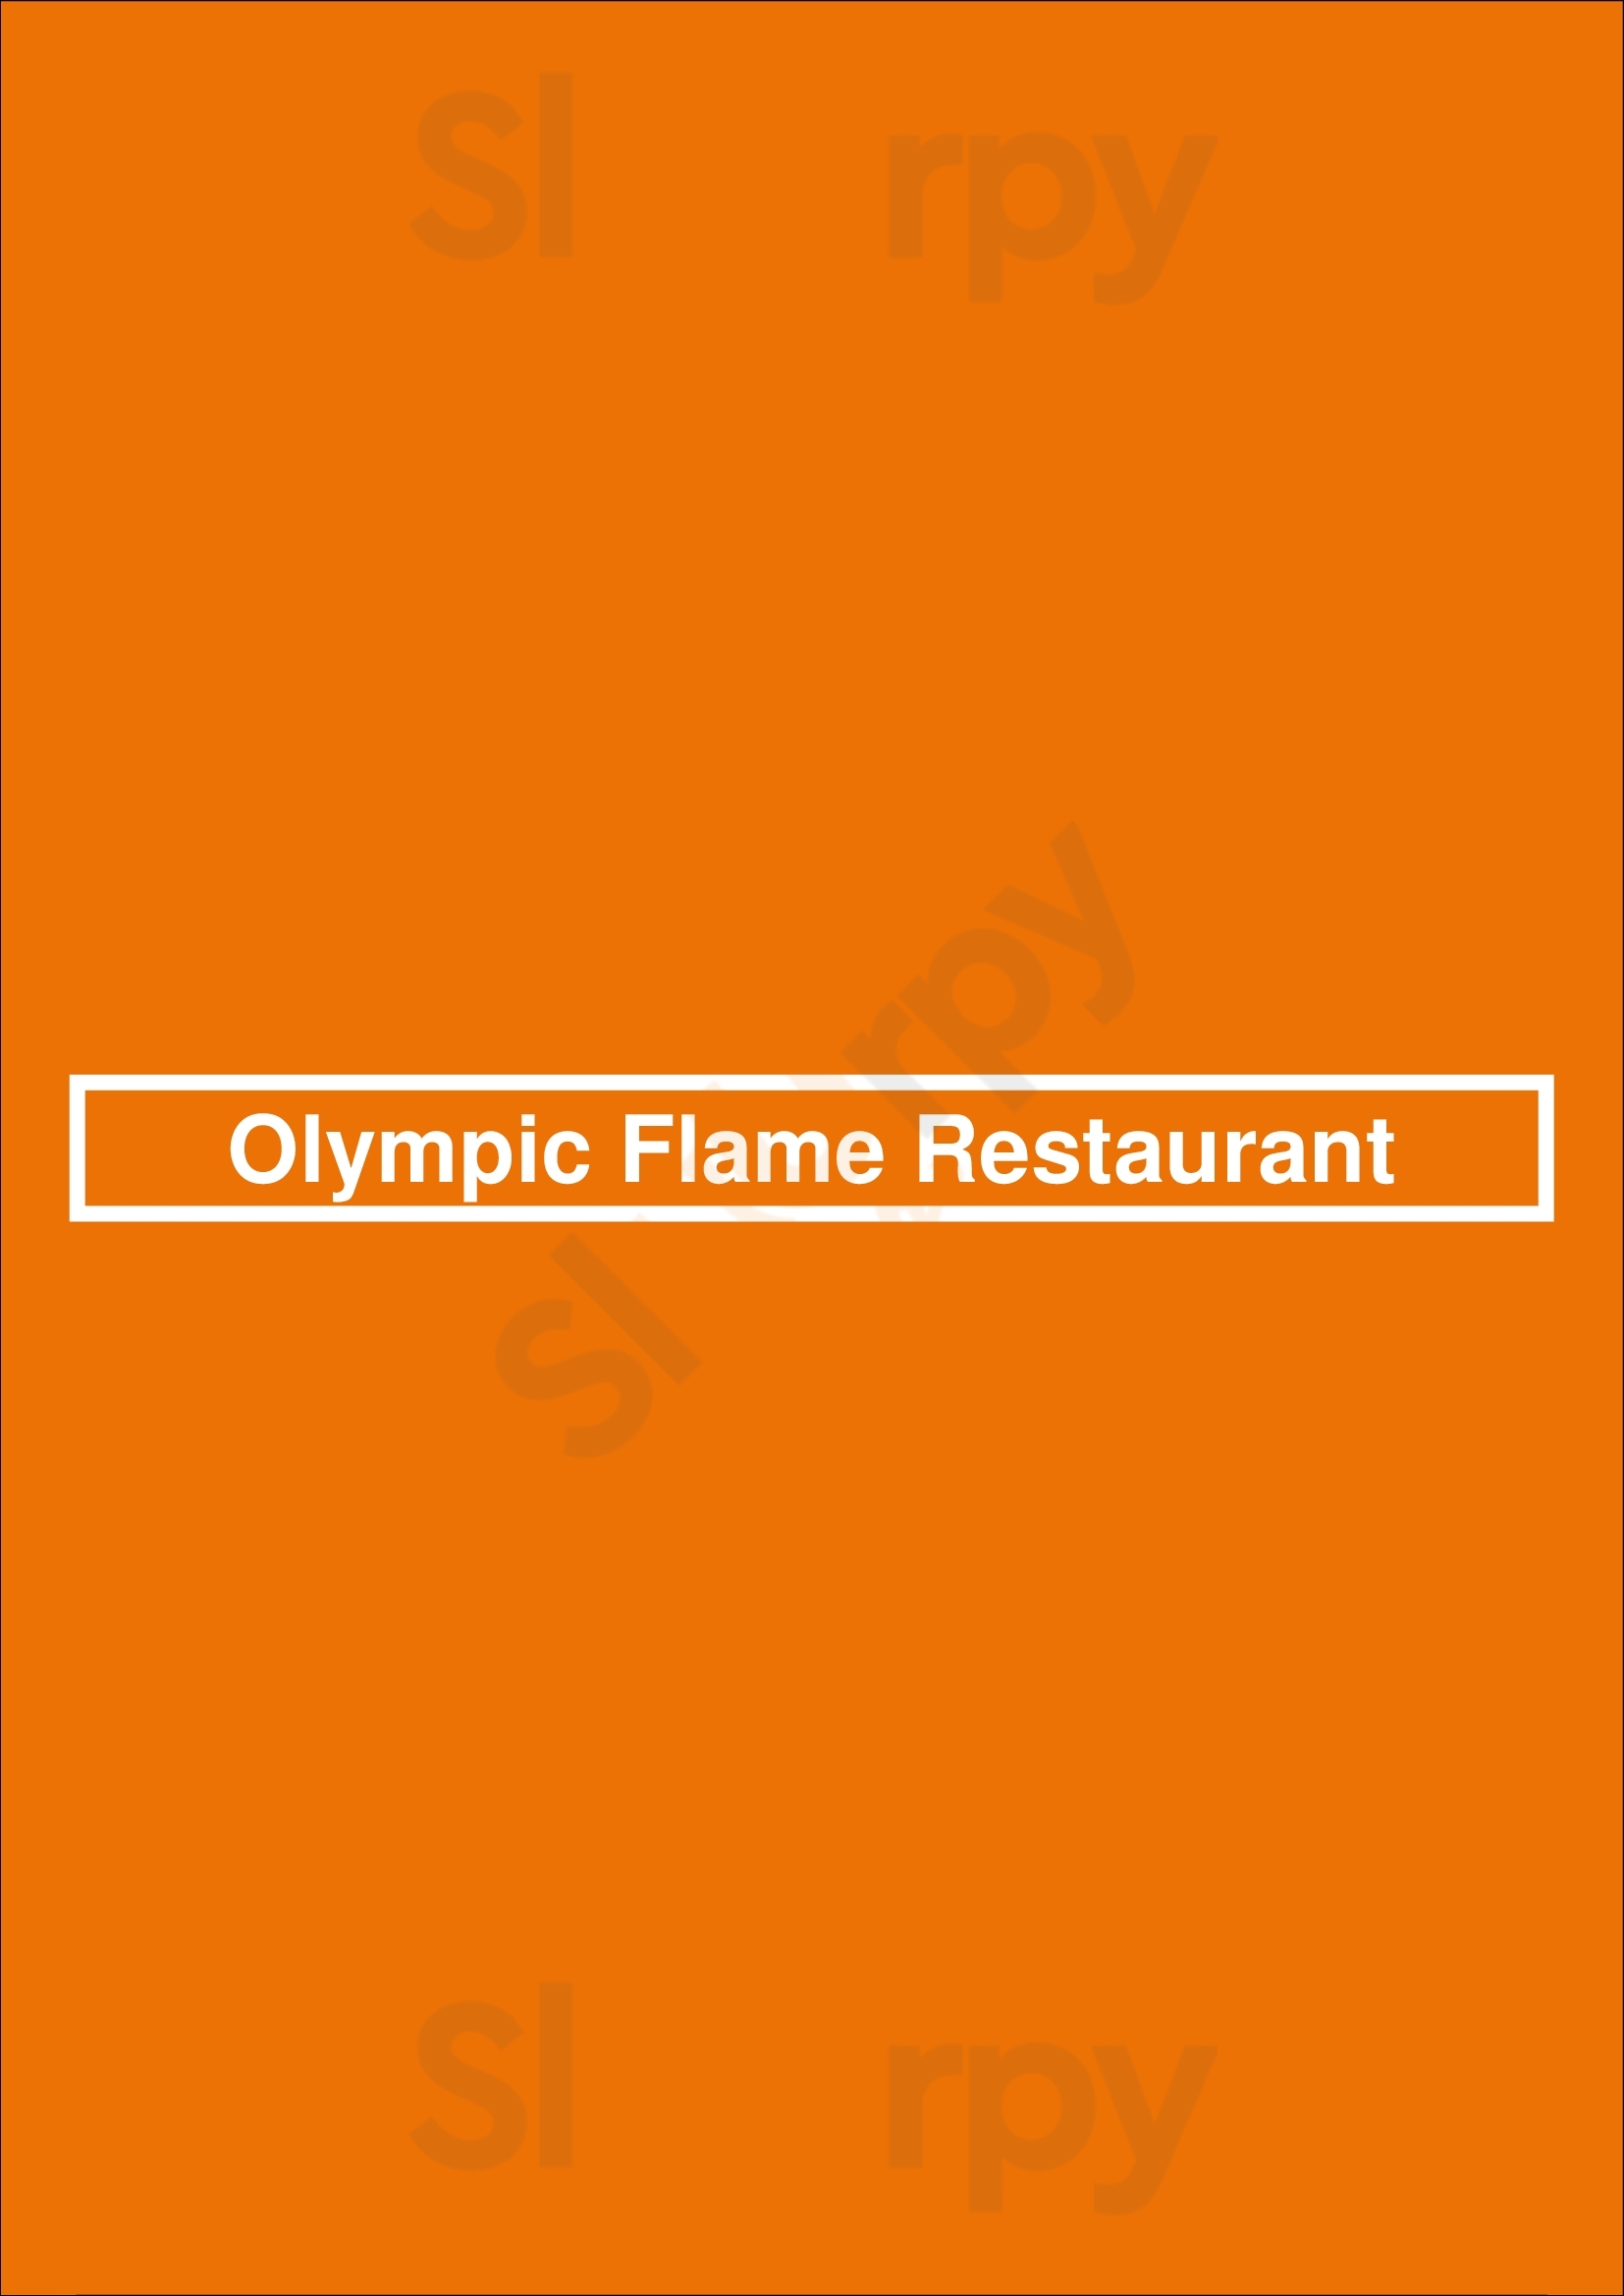 Olympic Flame Restaurant Atlanta Menu - 1